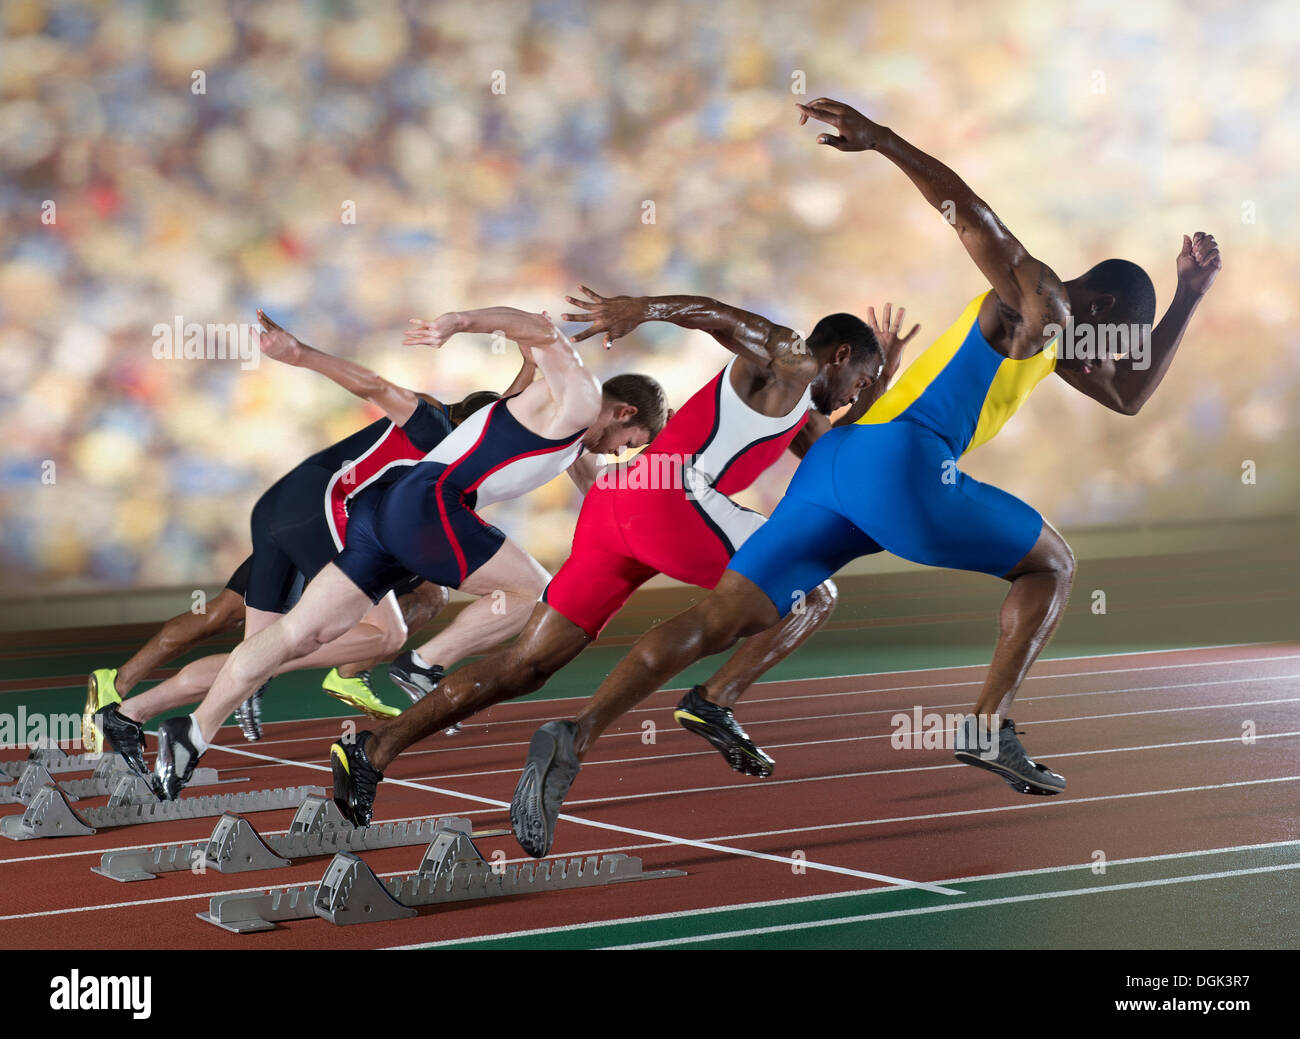 Quatre athlètes à partir d'une course de sprint Banque D'Images